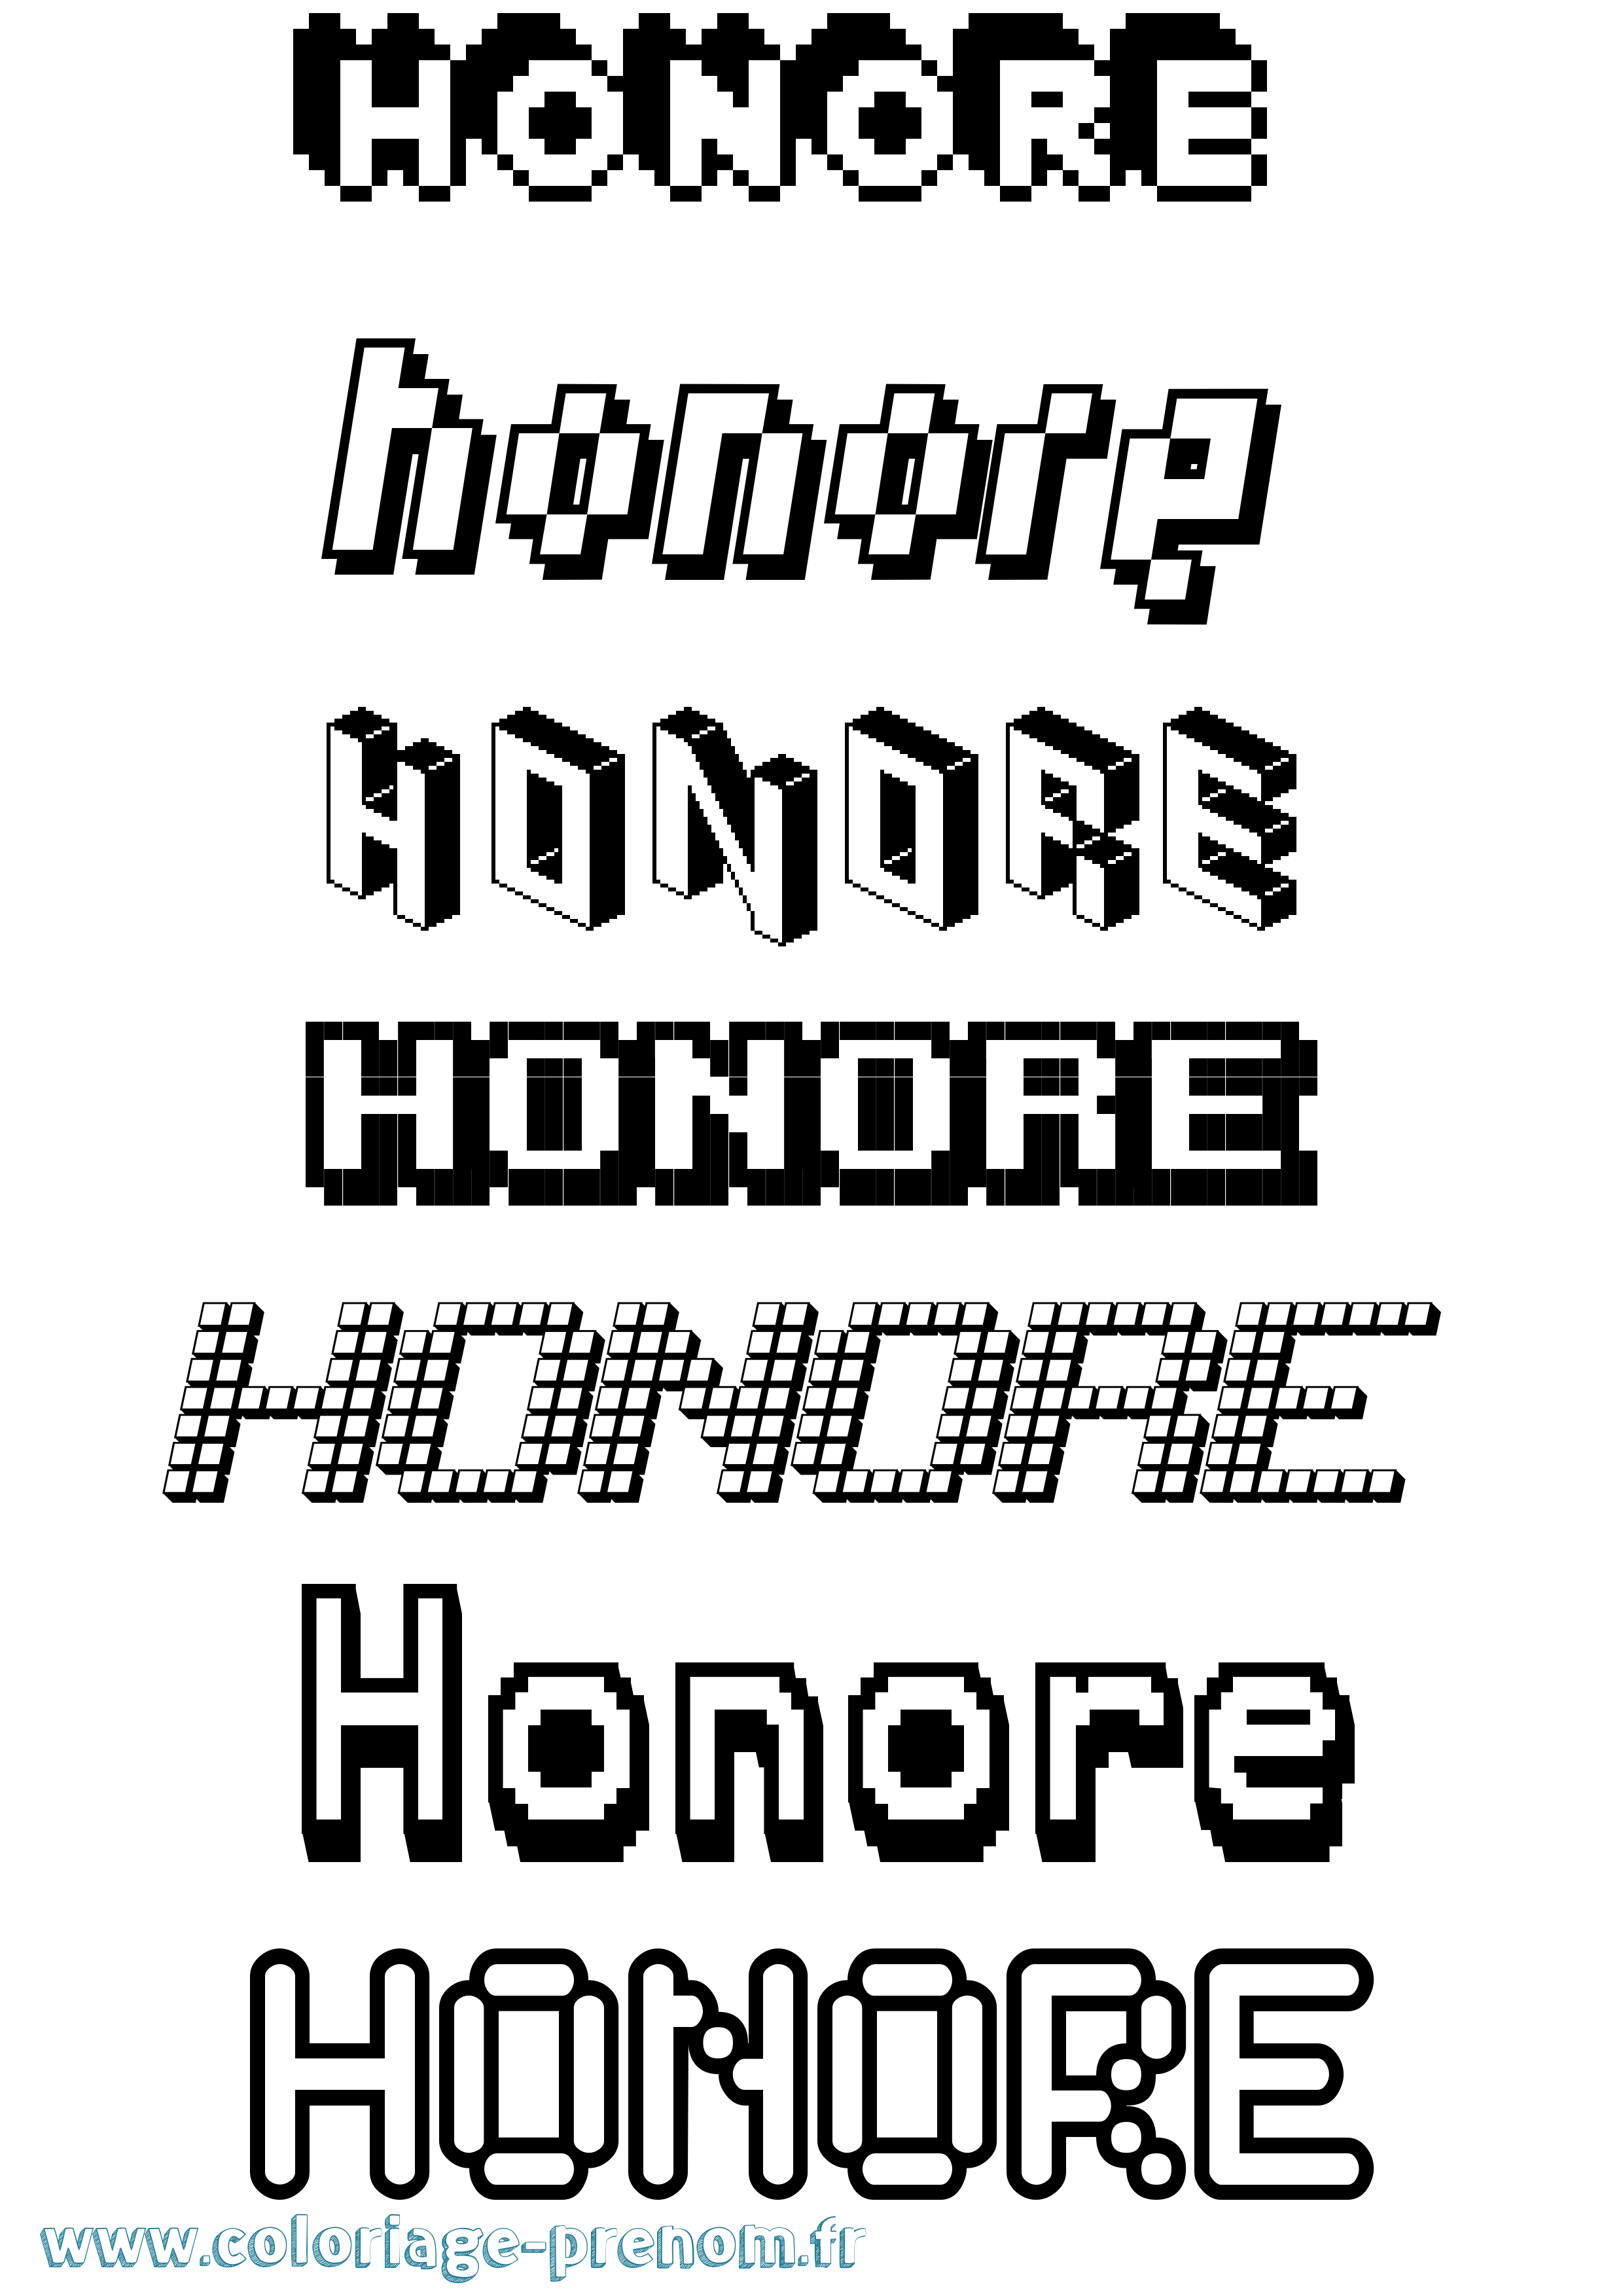 Coloriage prénom Honore Pixel